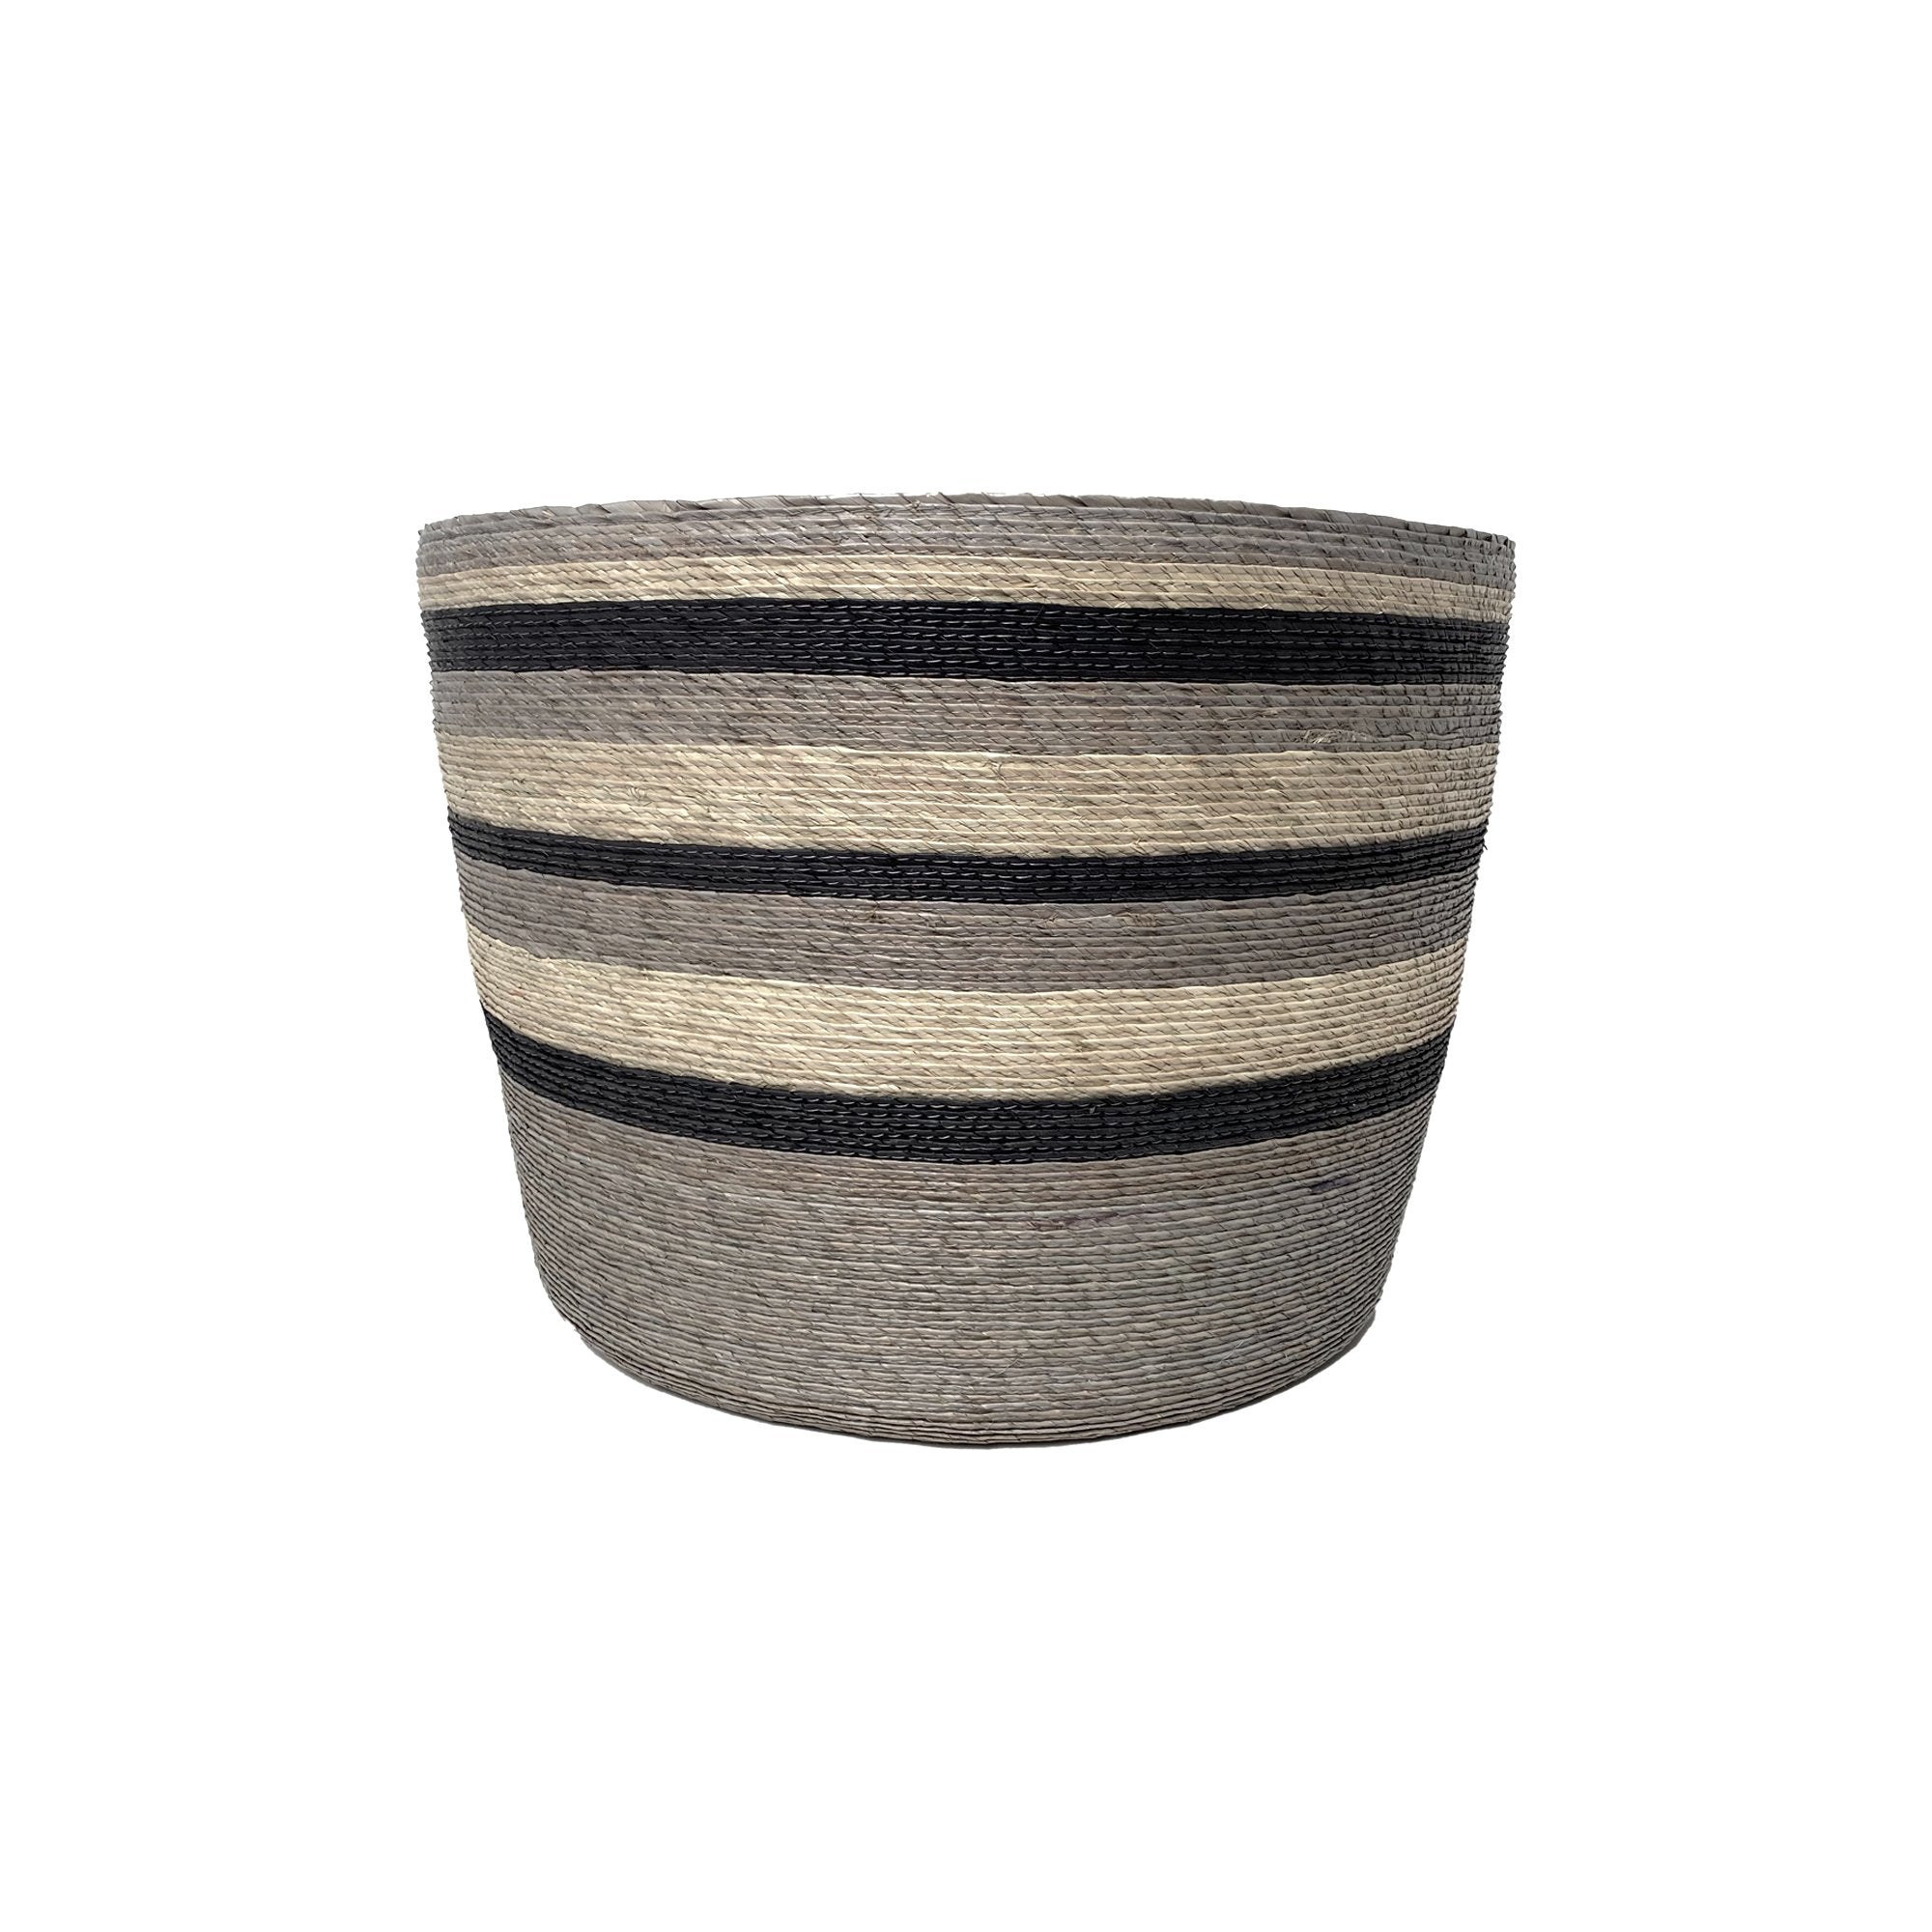 Large Palm Basket | Grey Baskets Grey/Natural Stripes 